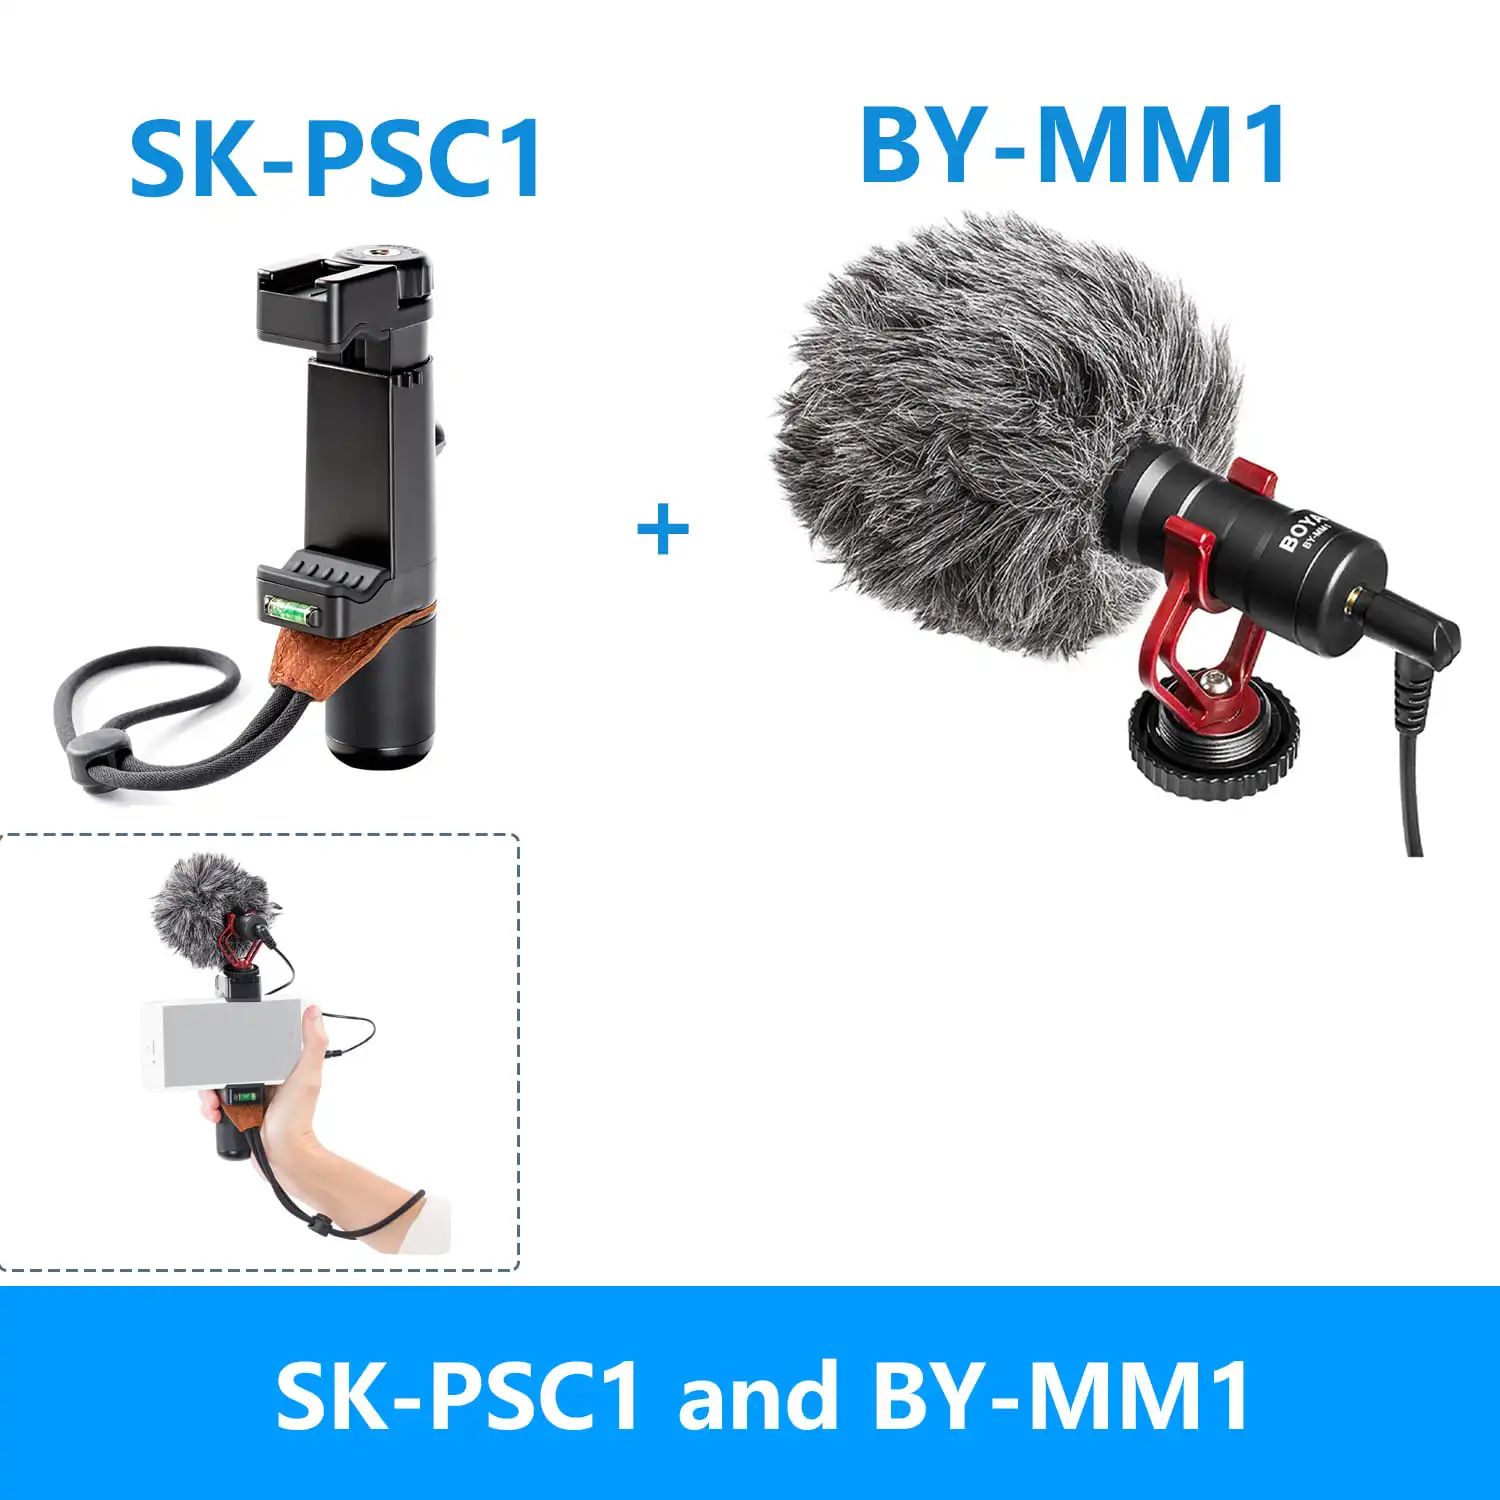 Färg: MM1 och SK-PSC1